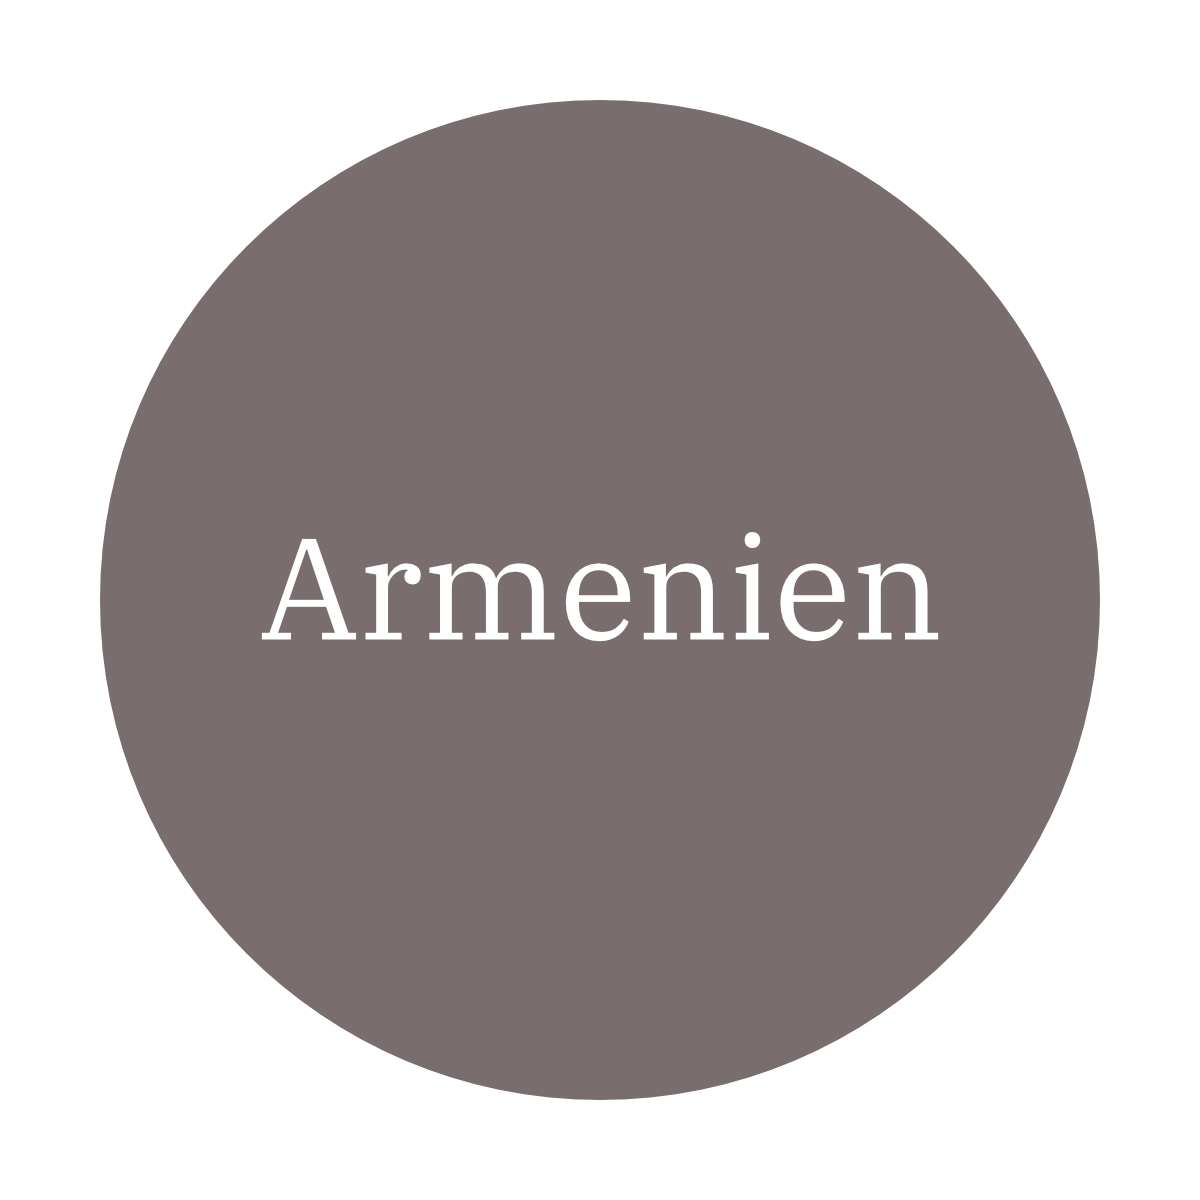 weinland armenien